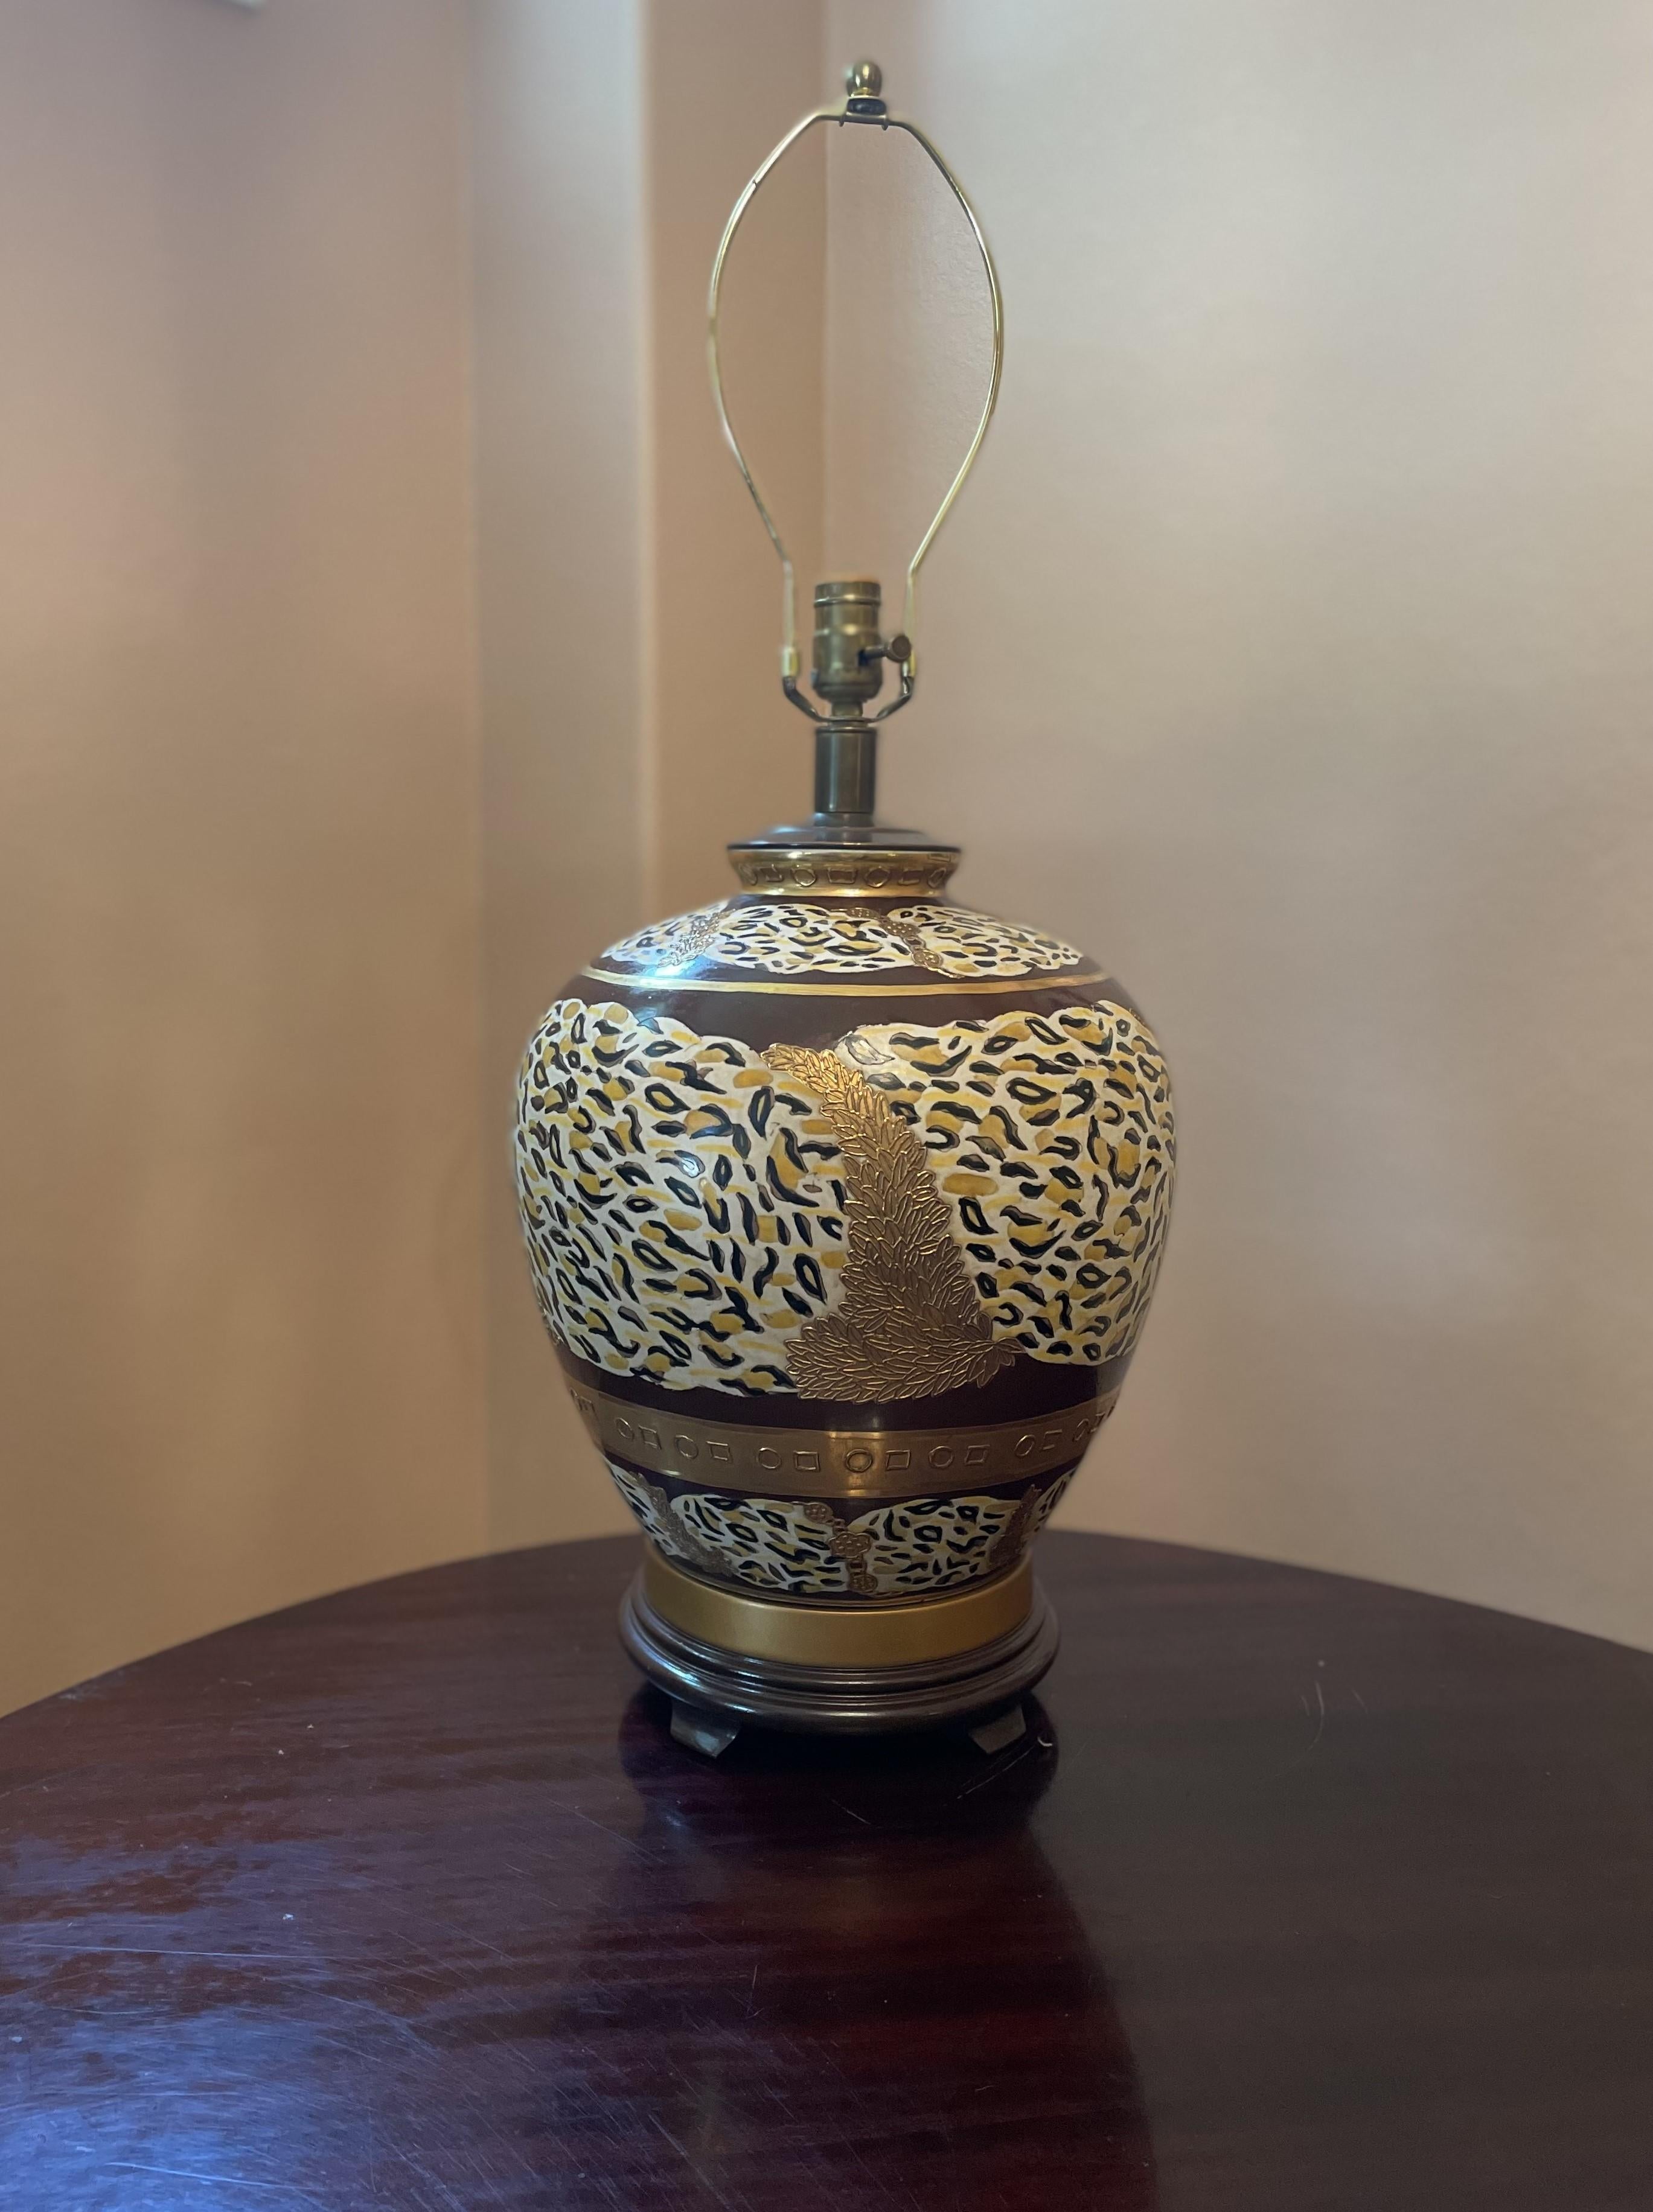 Diese große, handbemalte Keramik-Tischlampe versprüht mit ihrem Tiermotiv eine tolle Stimmung, die Ihre inneren Safariträume weckt. Es ist ein einzigartiges Stück. Die neutrale Farbpalette aus Braun-, Braun-, Schwarz- und Cremetönen, die mit Messing